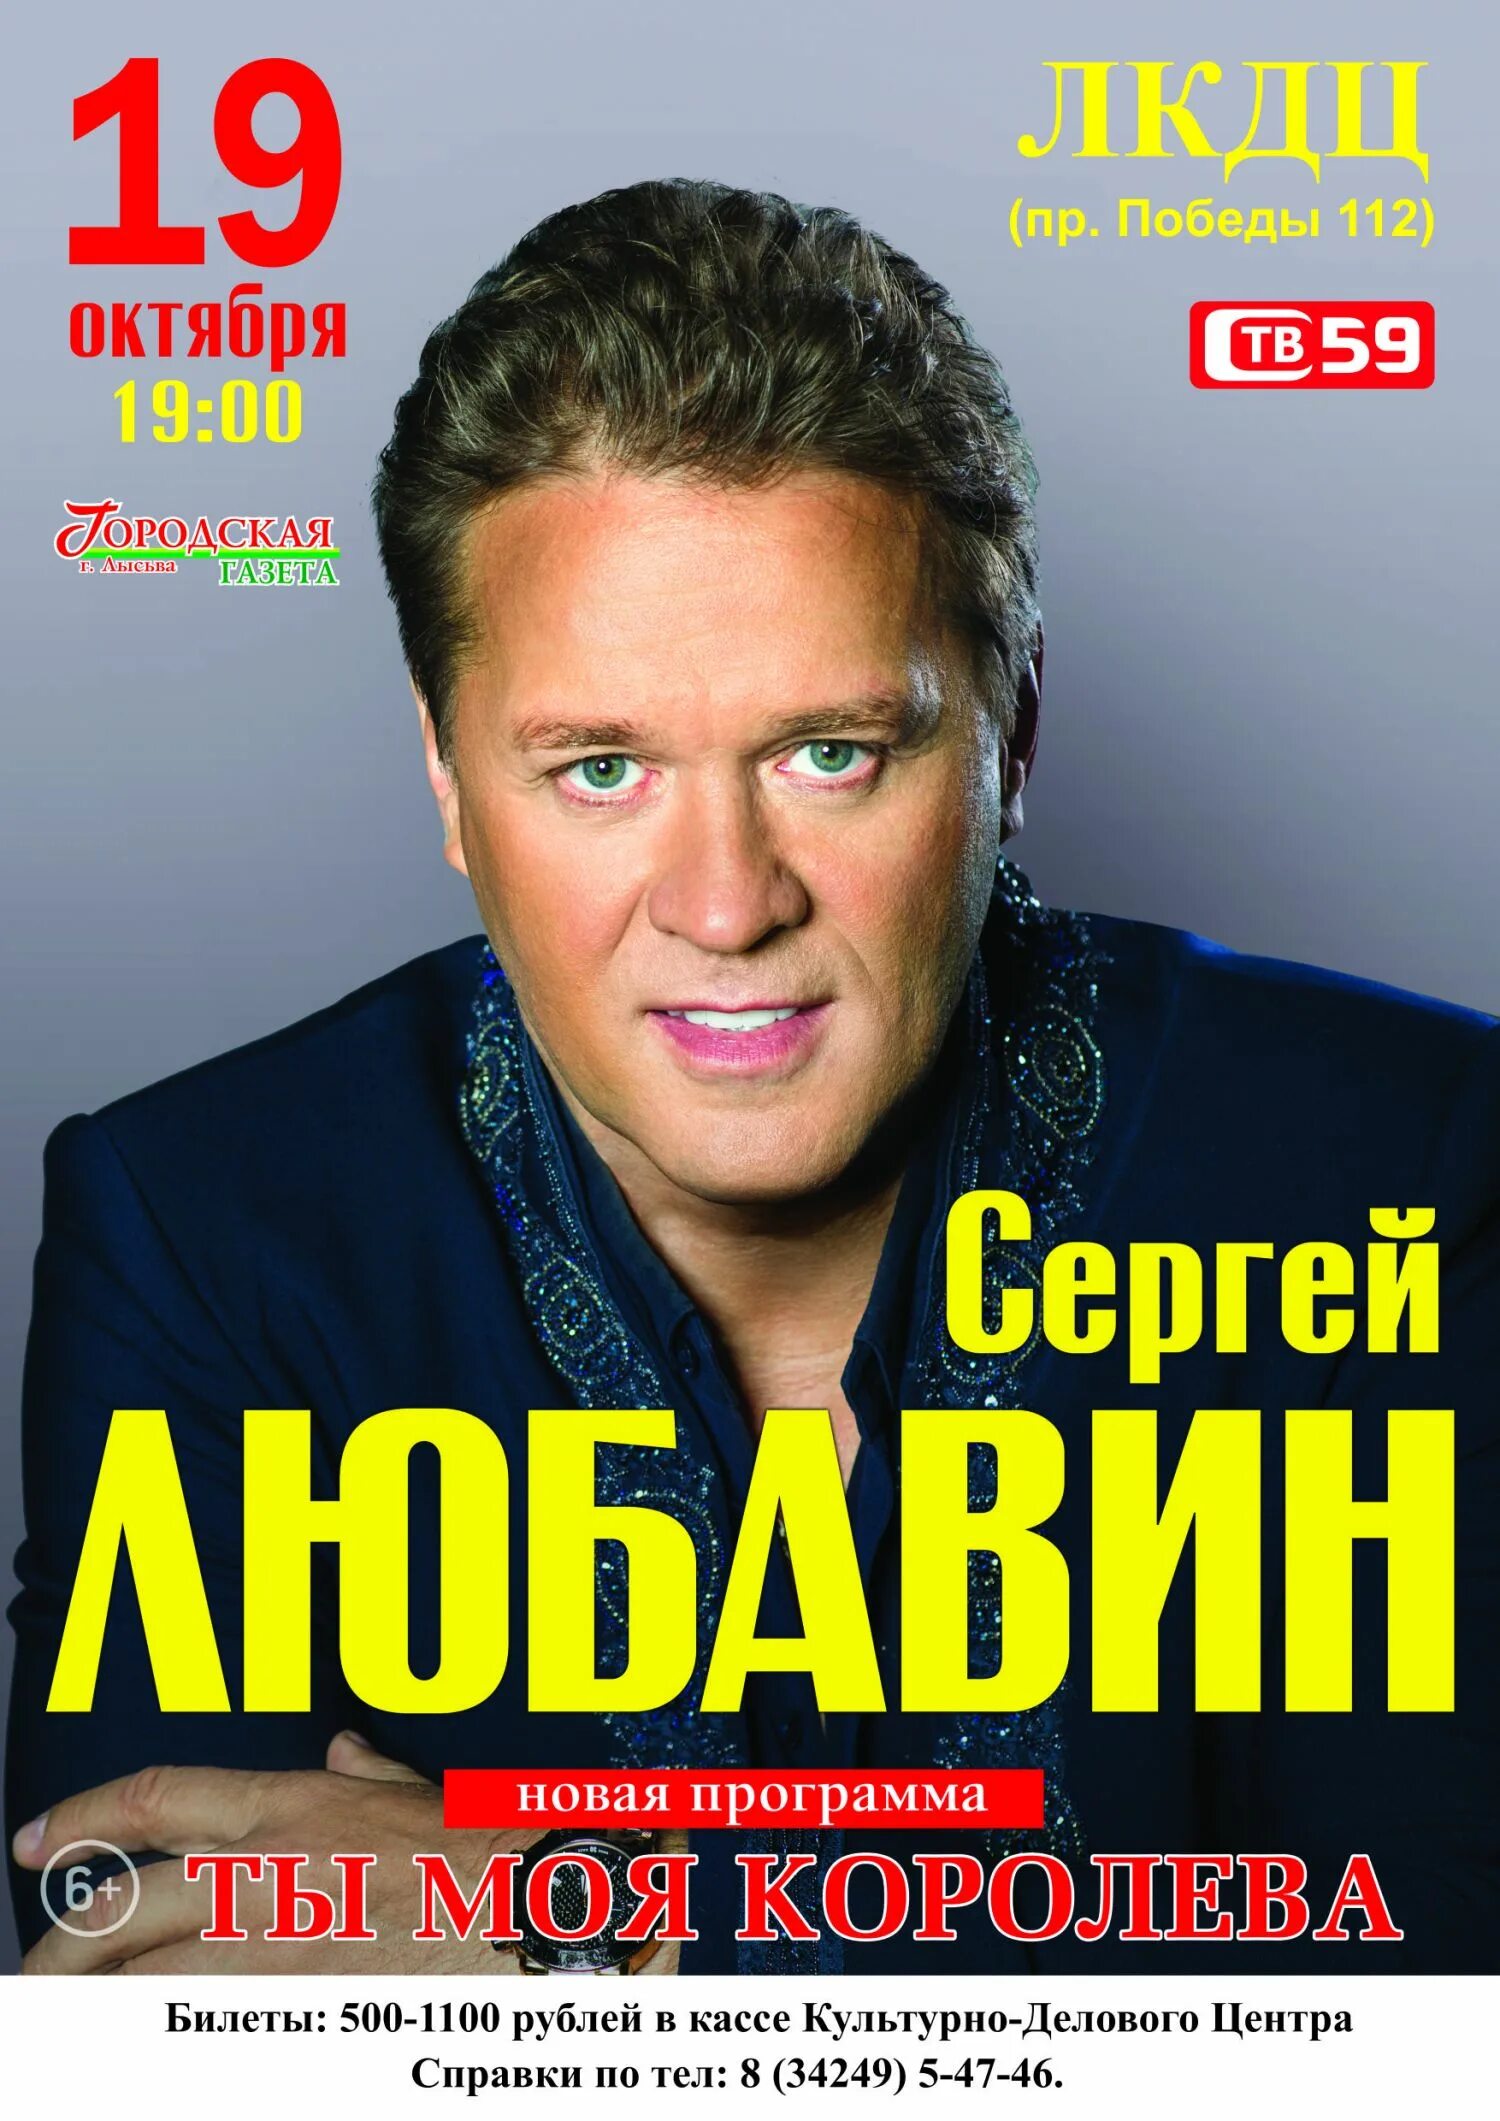 Любавин купить билет на концерт. Юбилейный концерт Сергея Любавина.